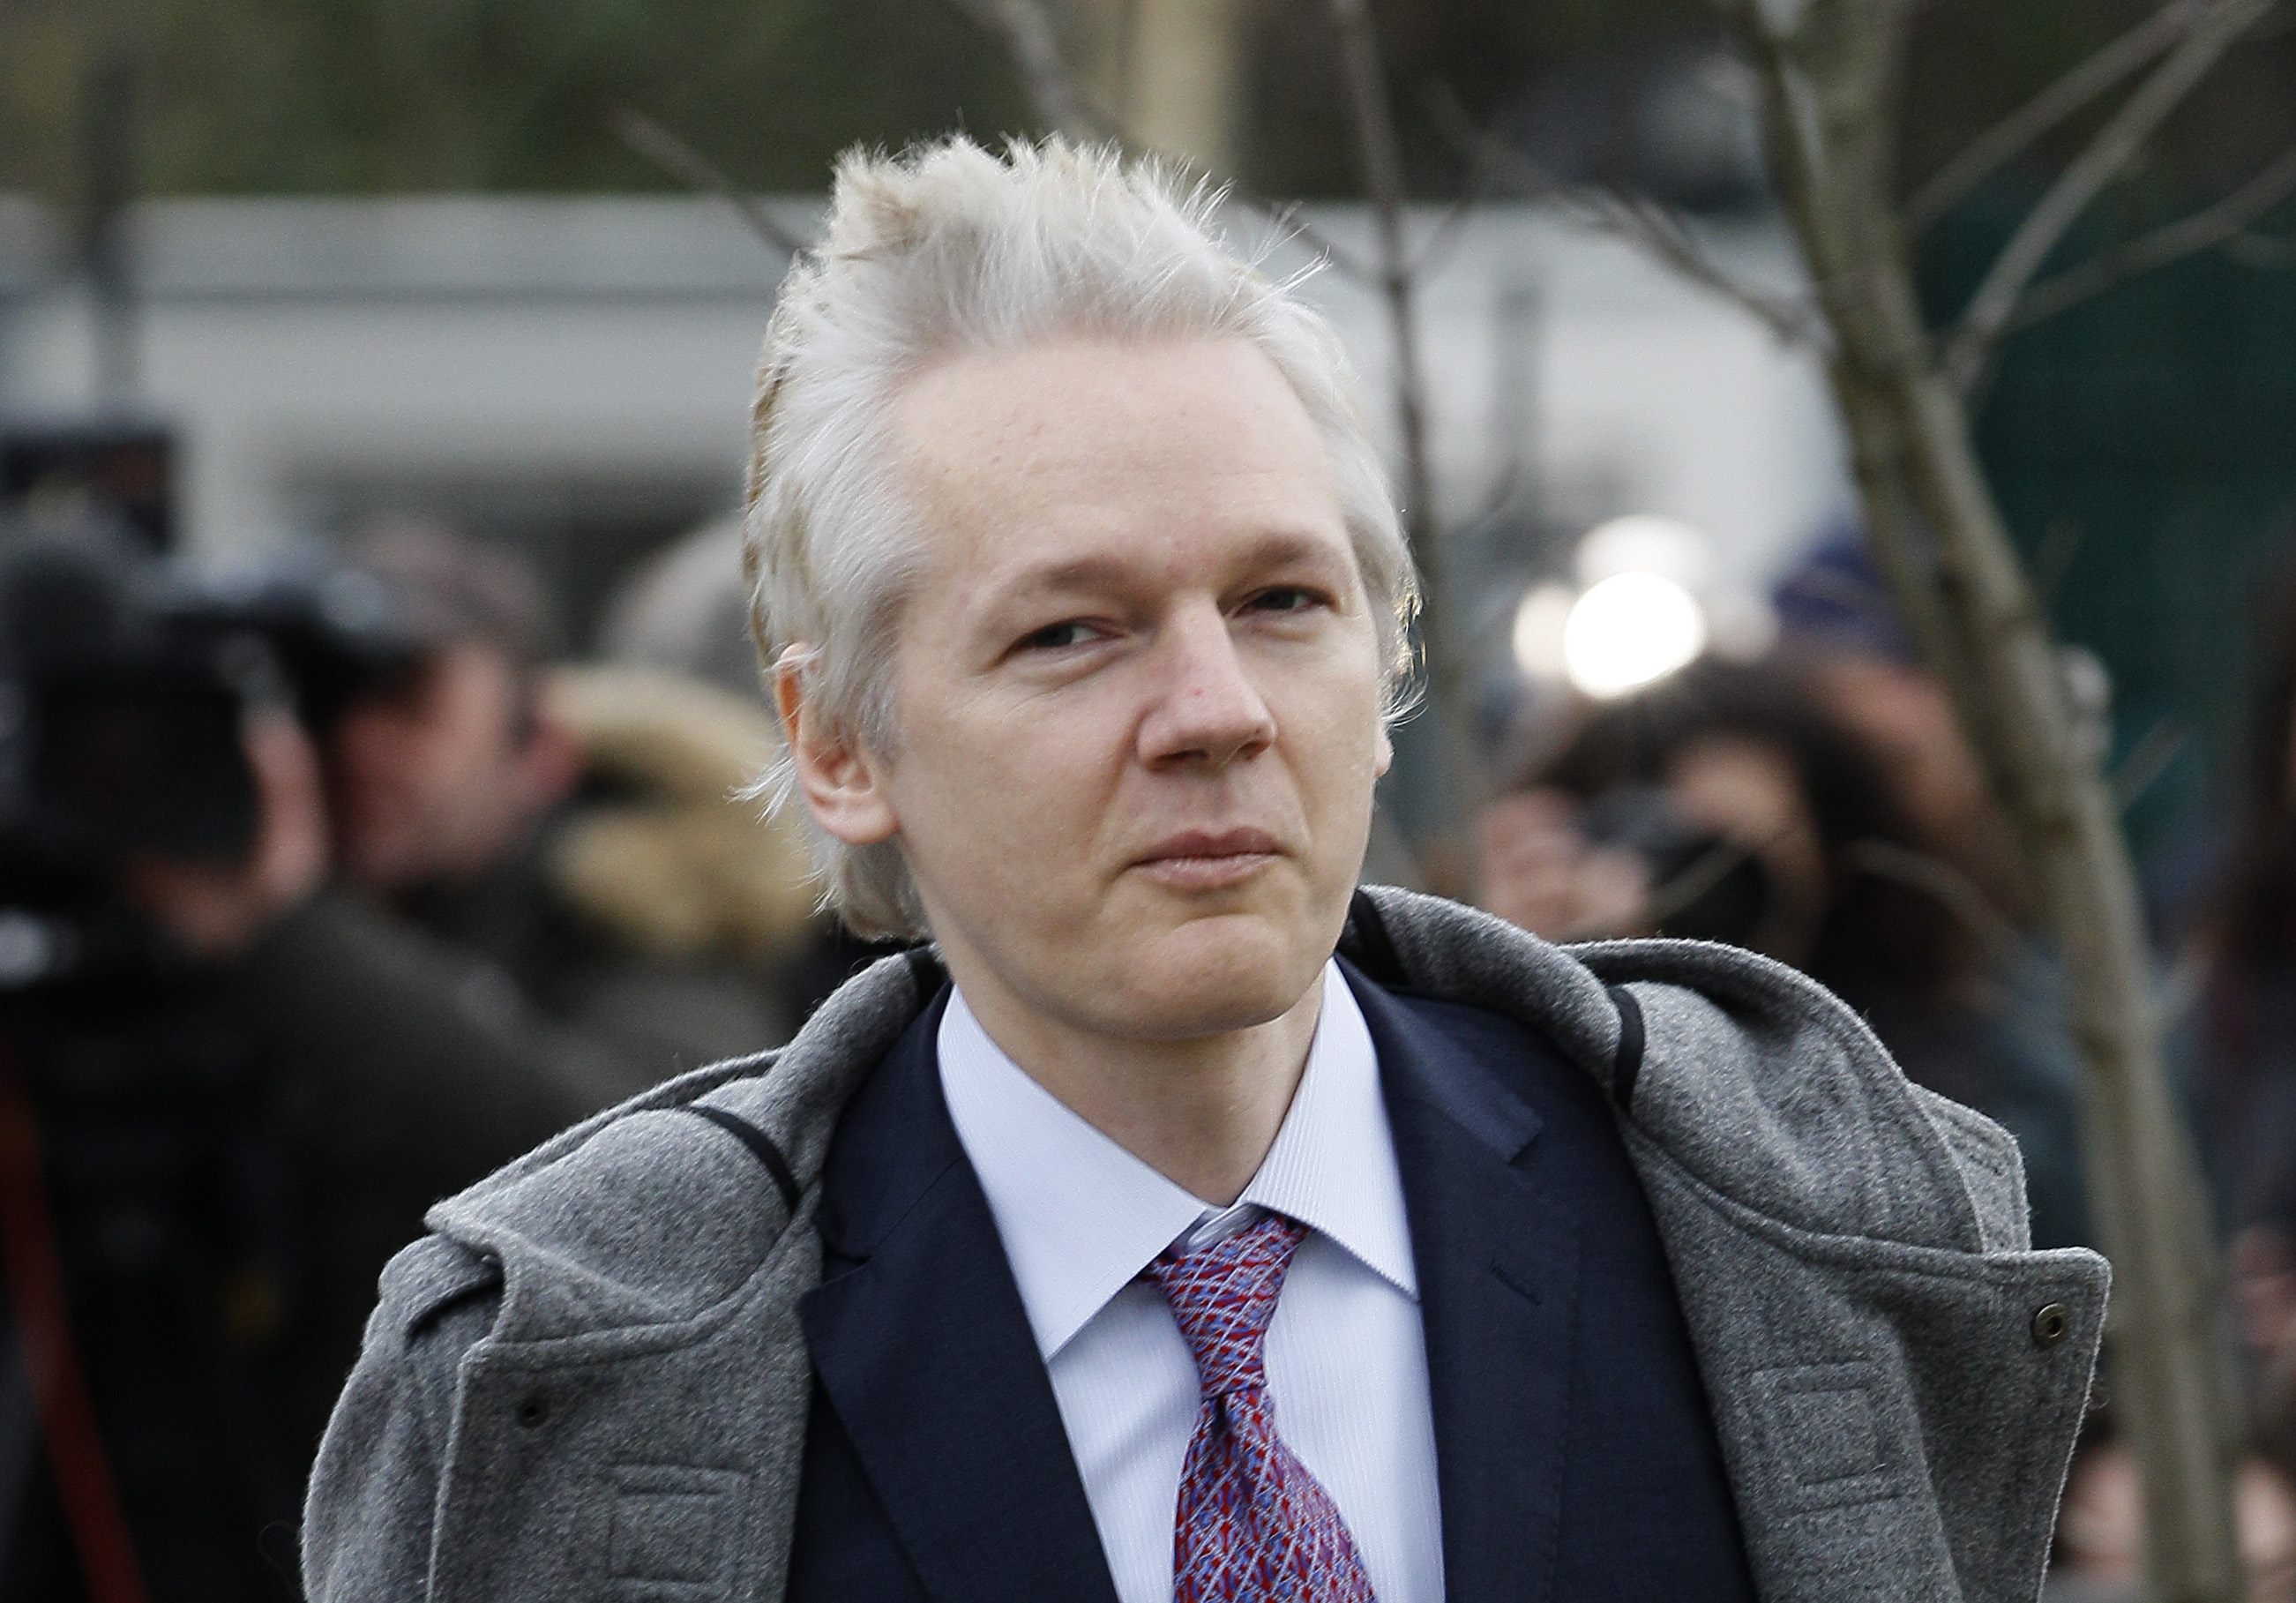 Kommer man fram till att åtala honom begärs Julian Assange häktad i väntan på rättegång.